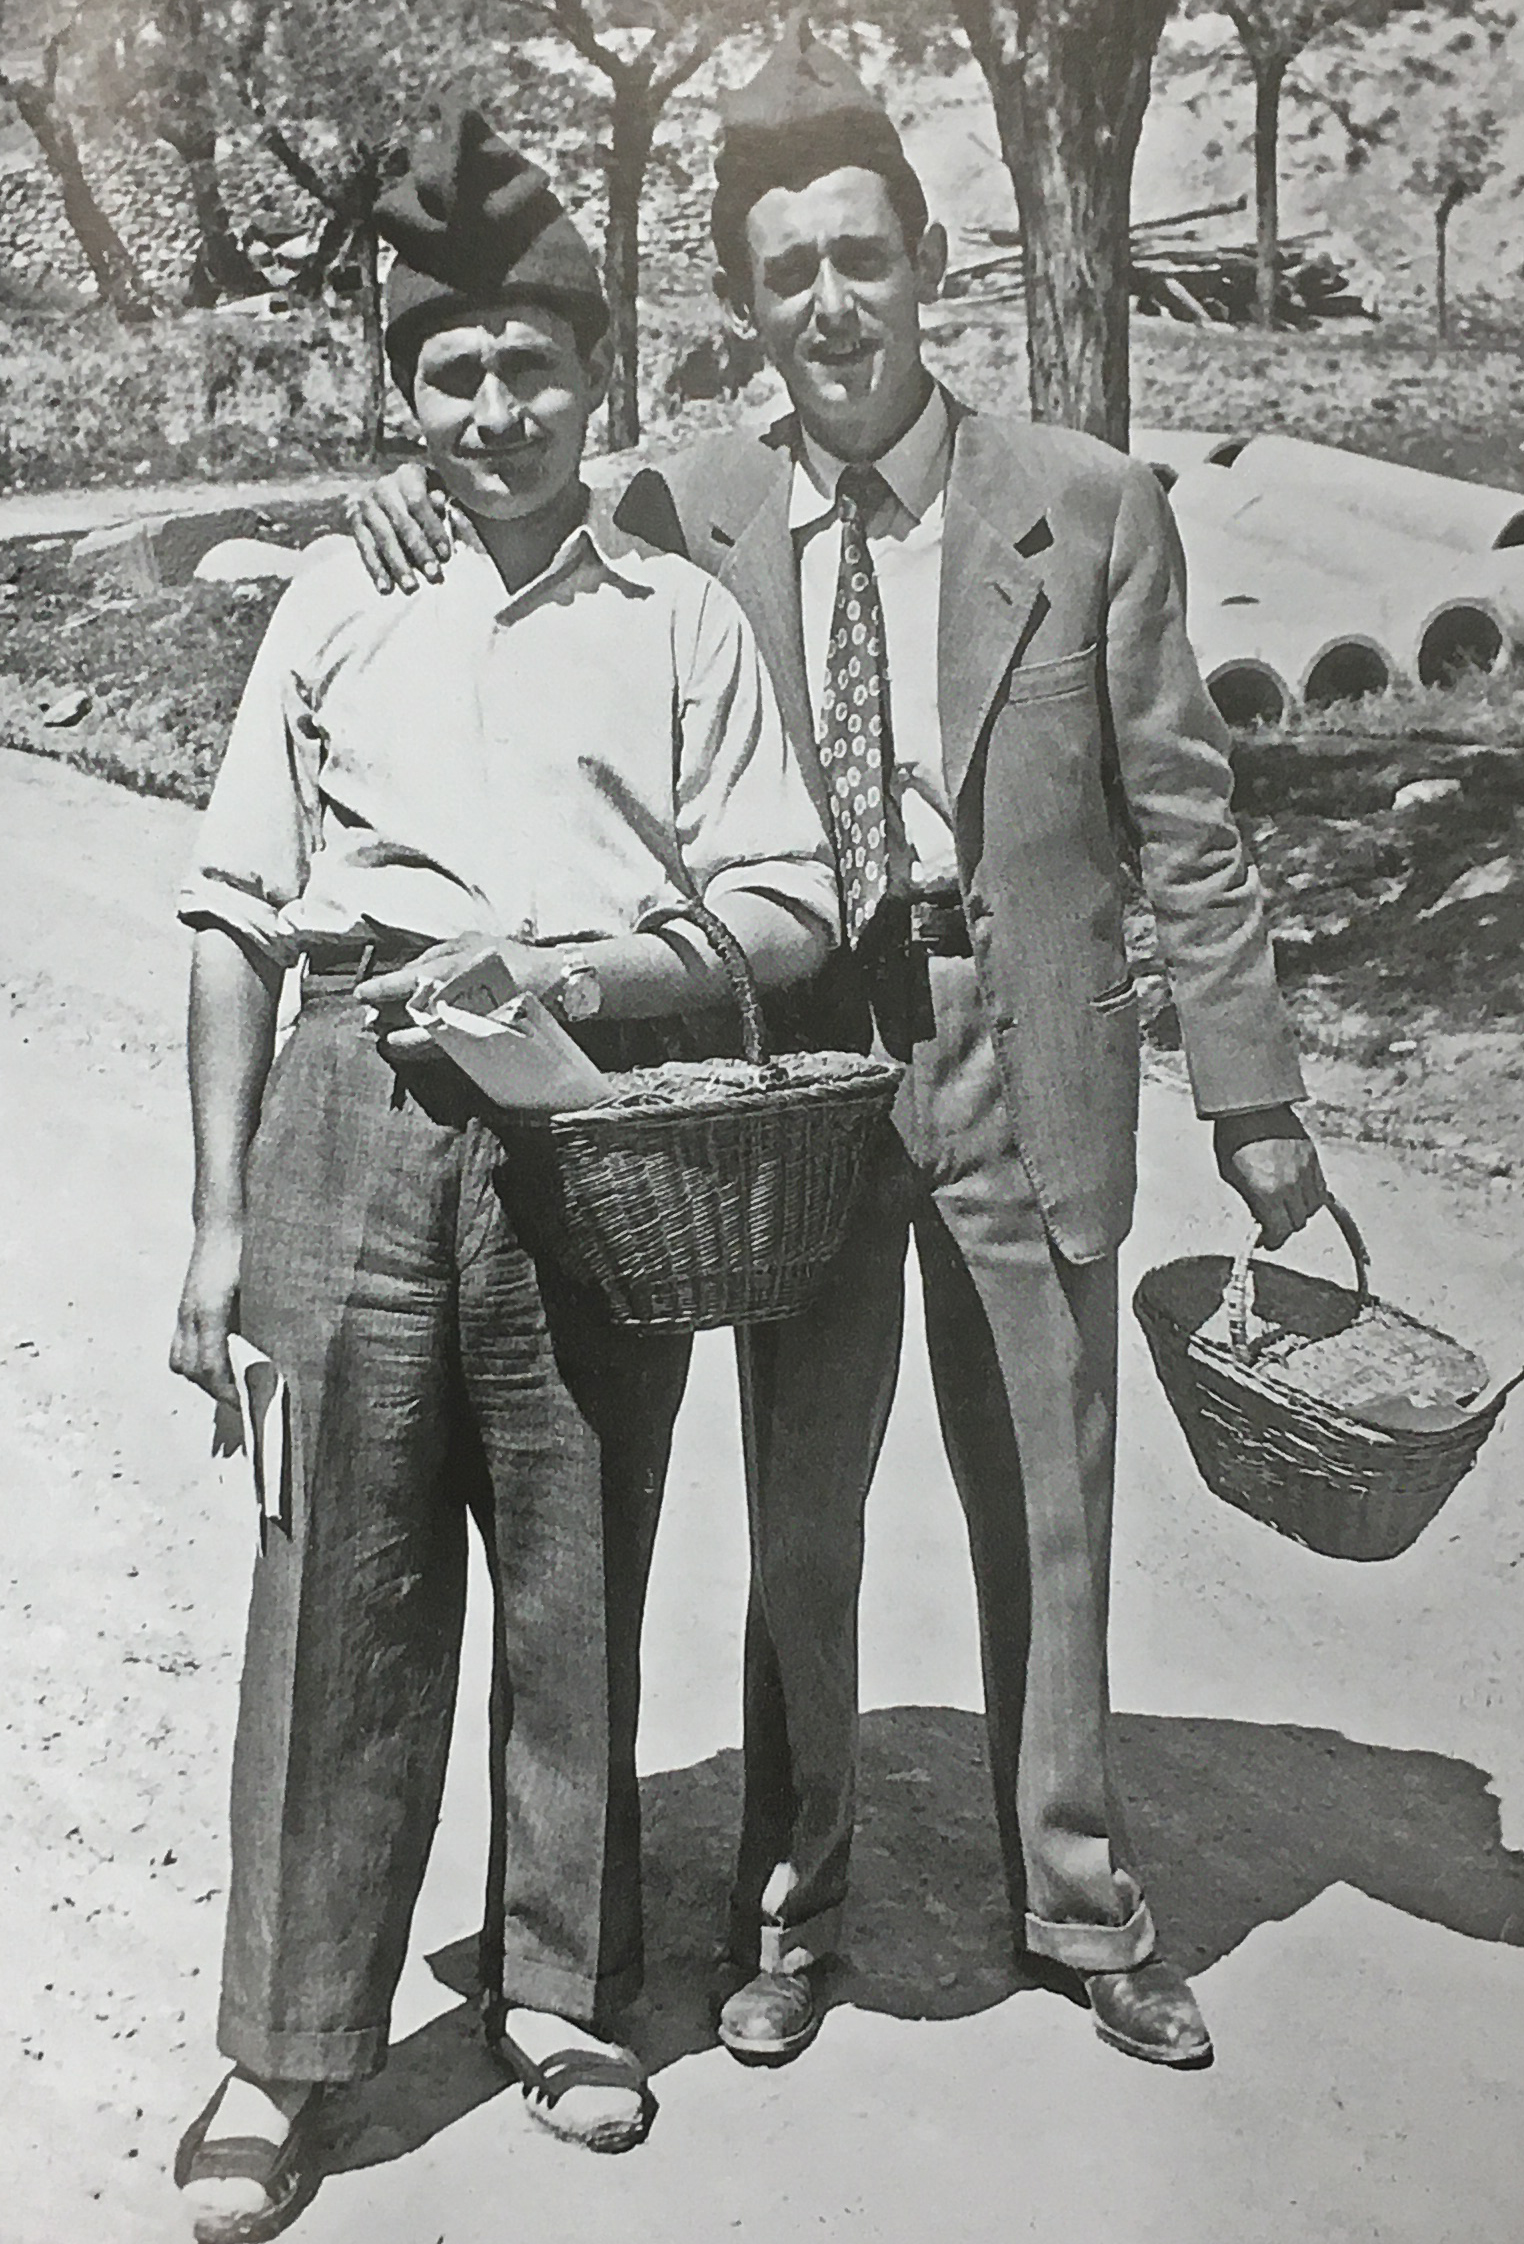 DÃ¨cada de 1940 - Caramellaires de la colla del Centre CatÃ²lic (font: llibre 'SÃºria. Els records d'un poble' de Josep Juncadella Masana i M. del Pilar GÃ³mez GÃ³mez).